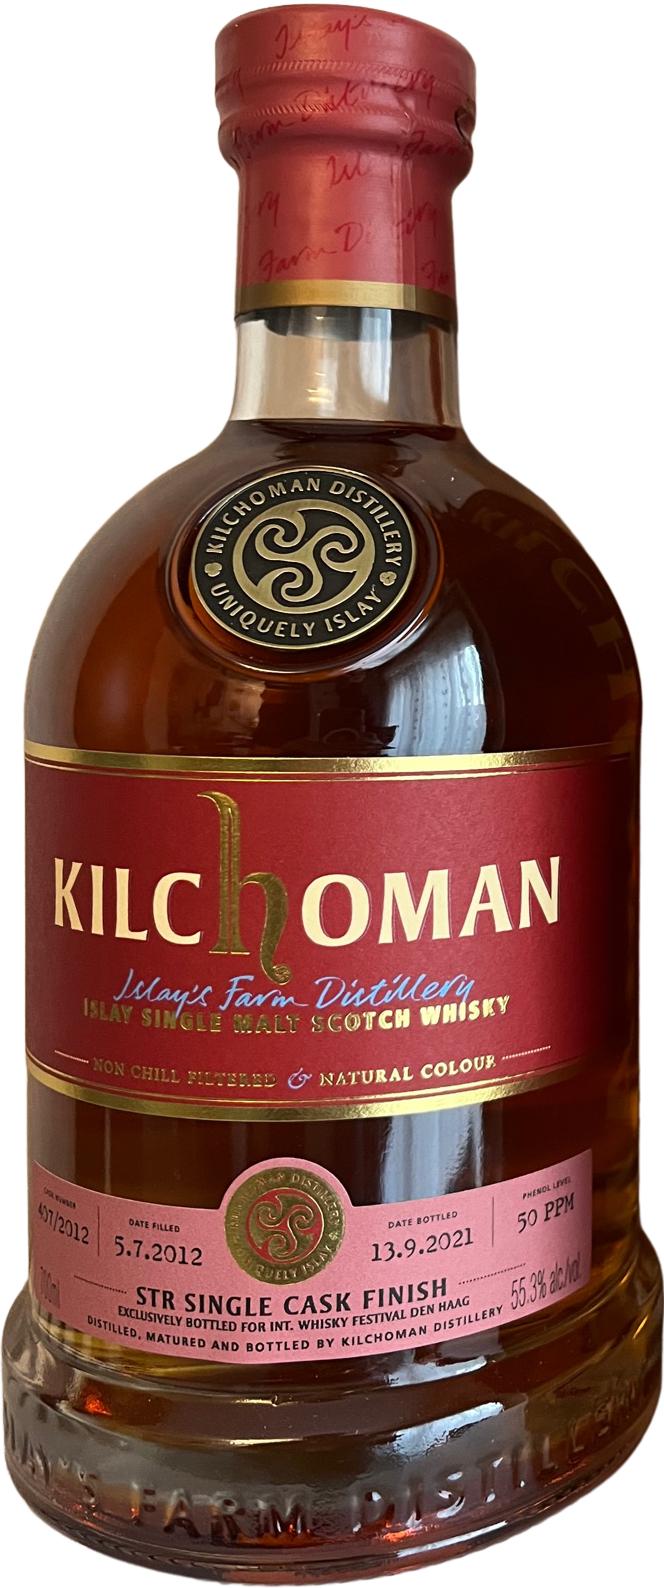 Kilchoman 2012 International Whisky Festival Den Haag 55.3% 700ml